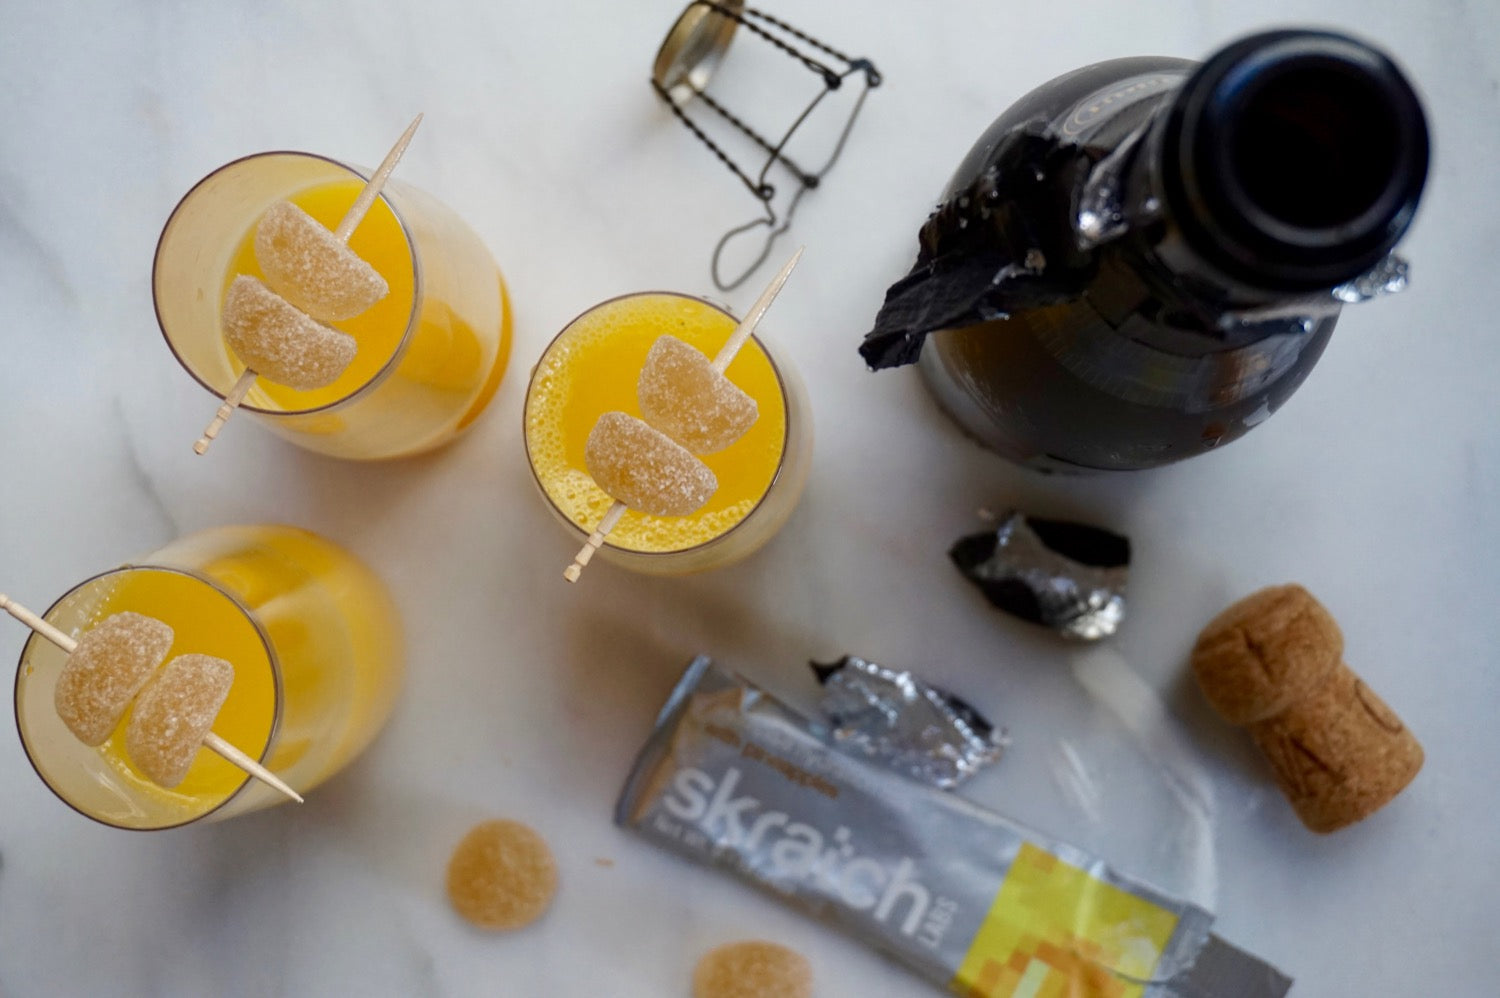 Skratch healthy mimosa recipe